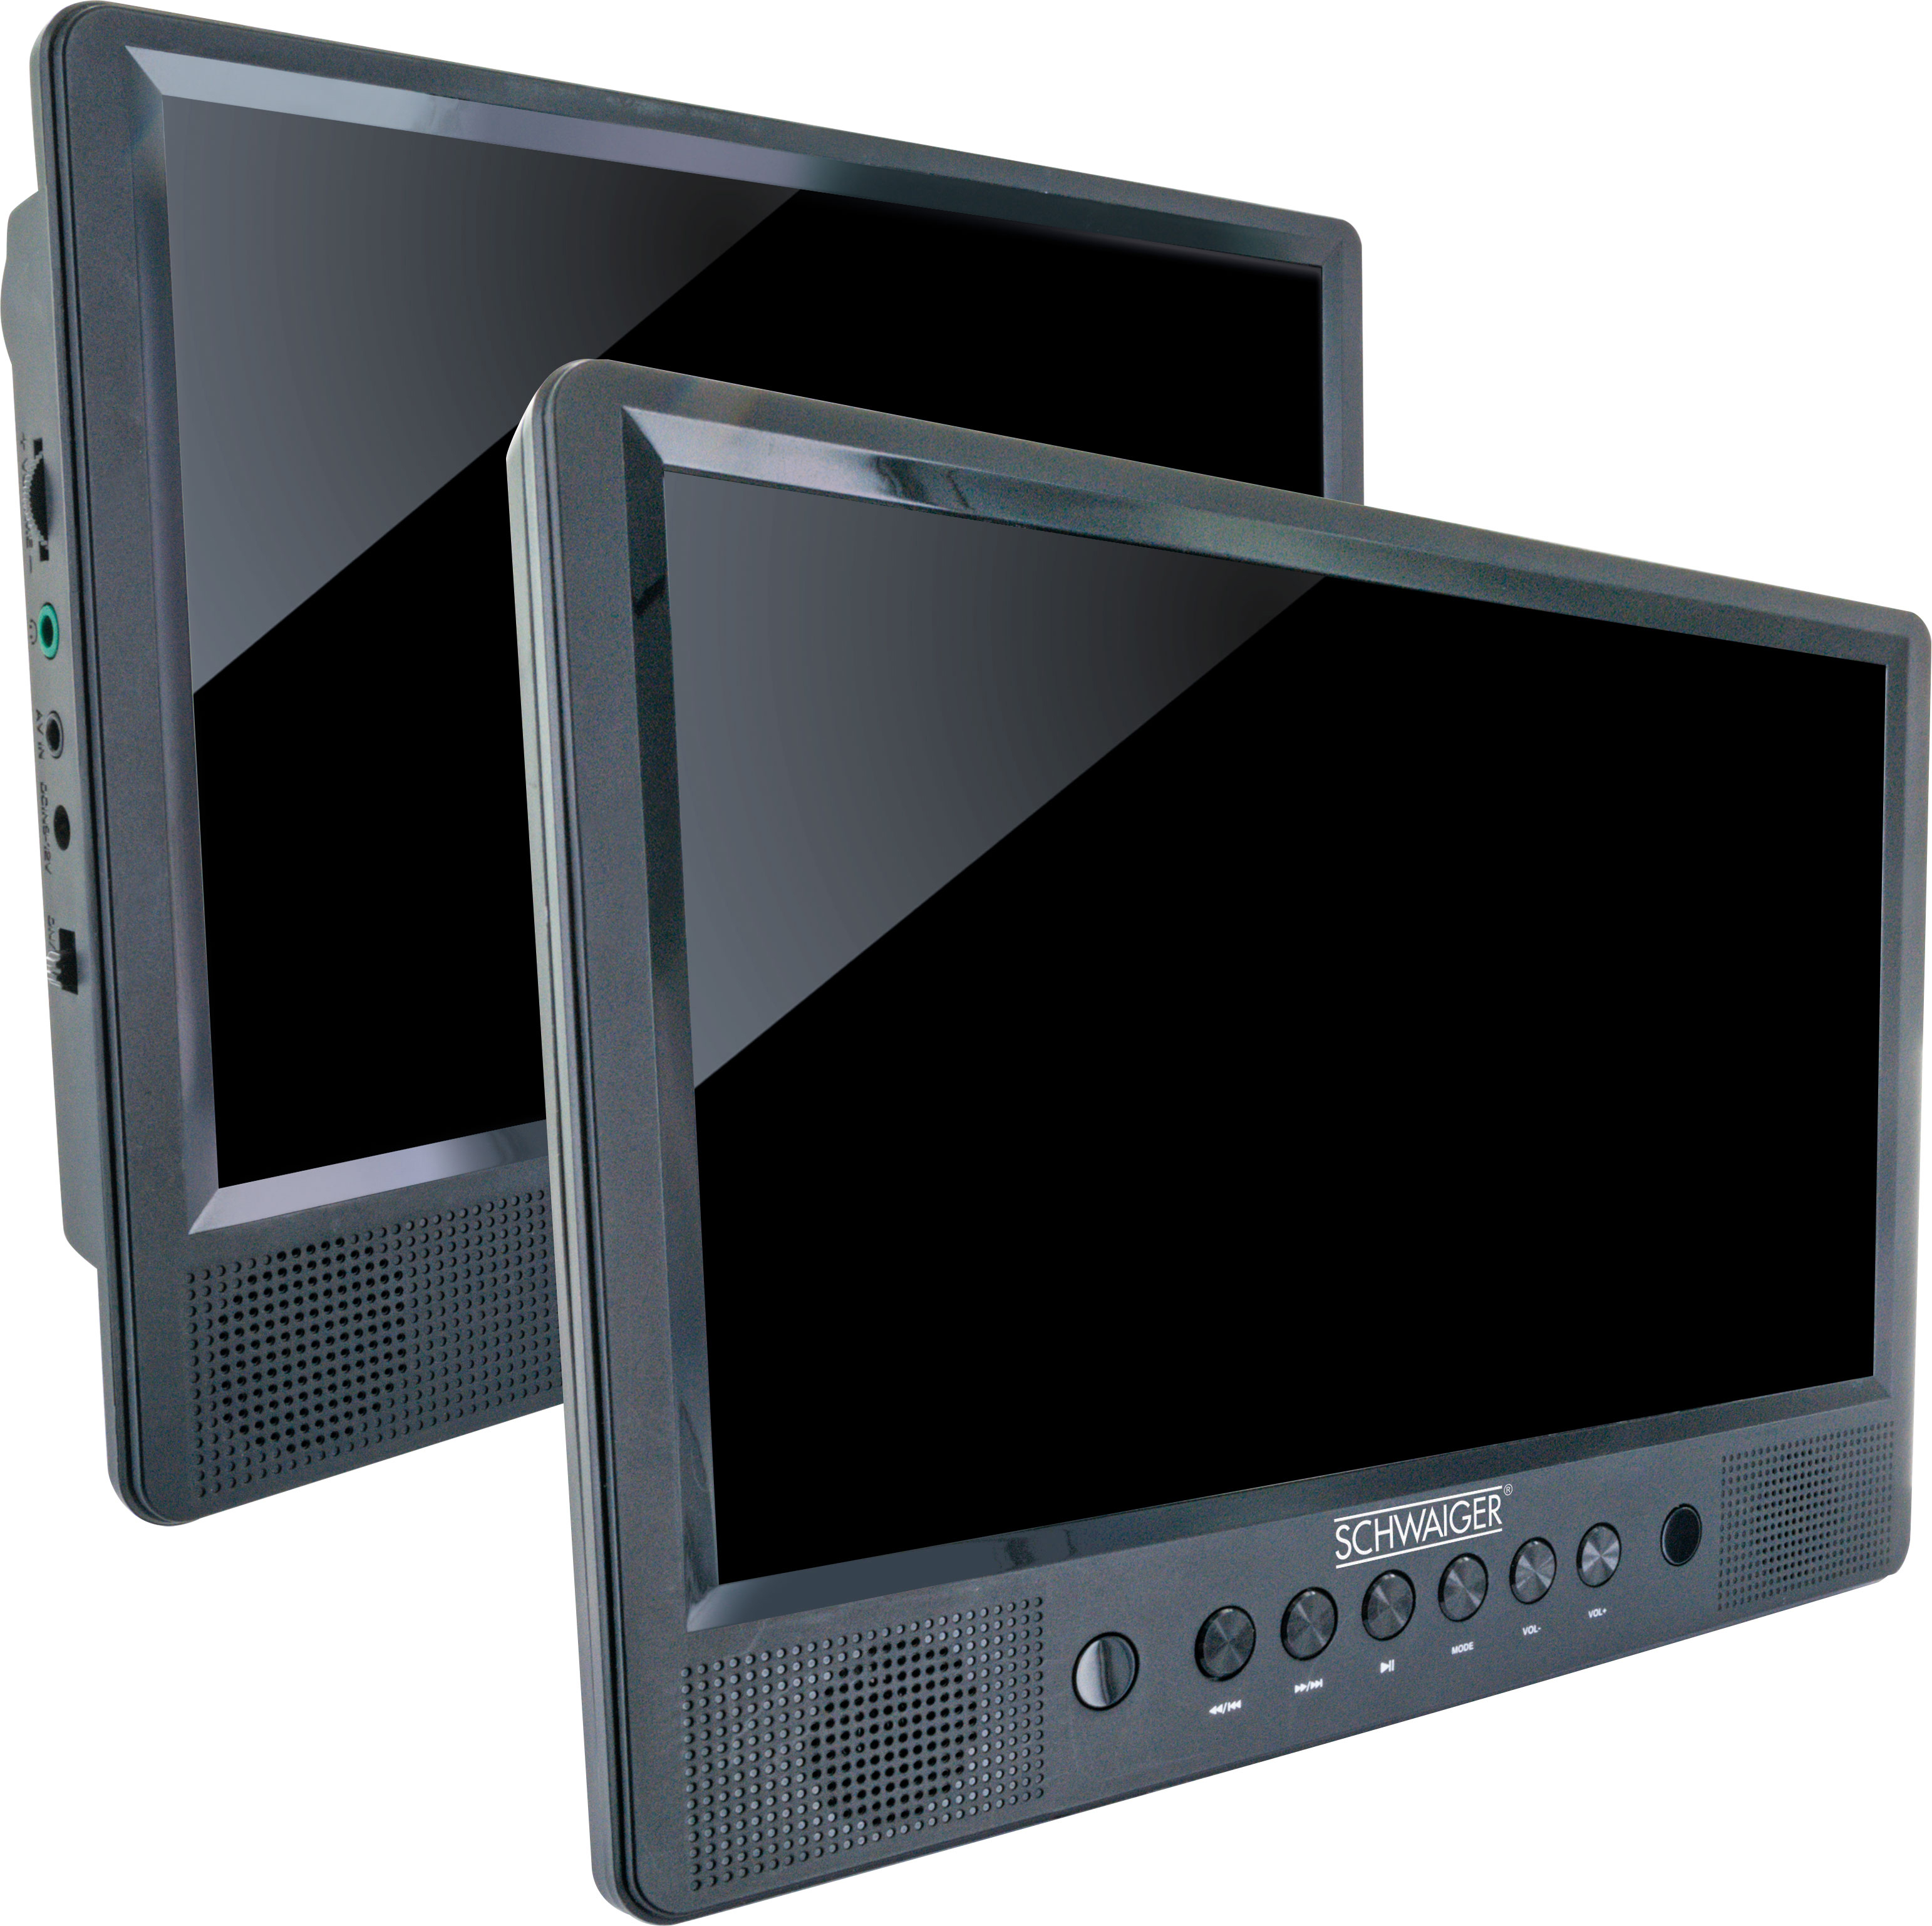 mit -716474- Fernbedienung Set DVD SCHWAIGER schwarz Monitor